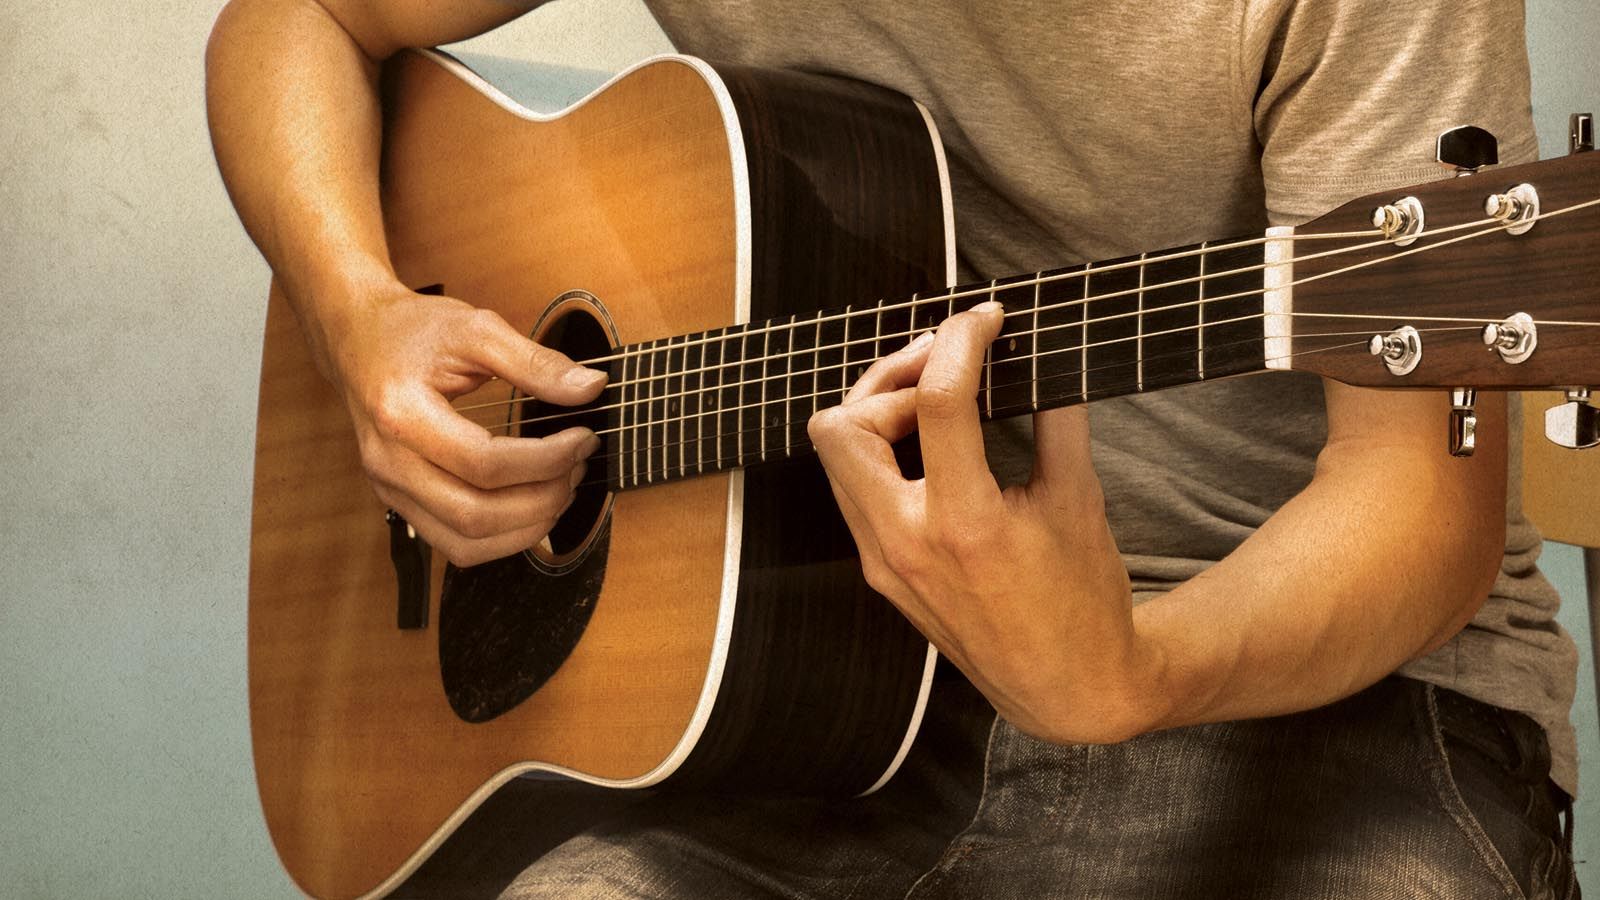 Игра на большой гитаре. Игра на гитаре. Хобби гитара. Уроки гитары. Человек играющий на гитаре.